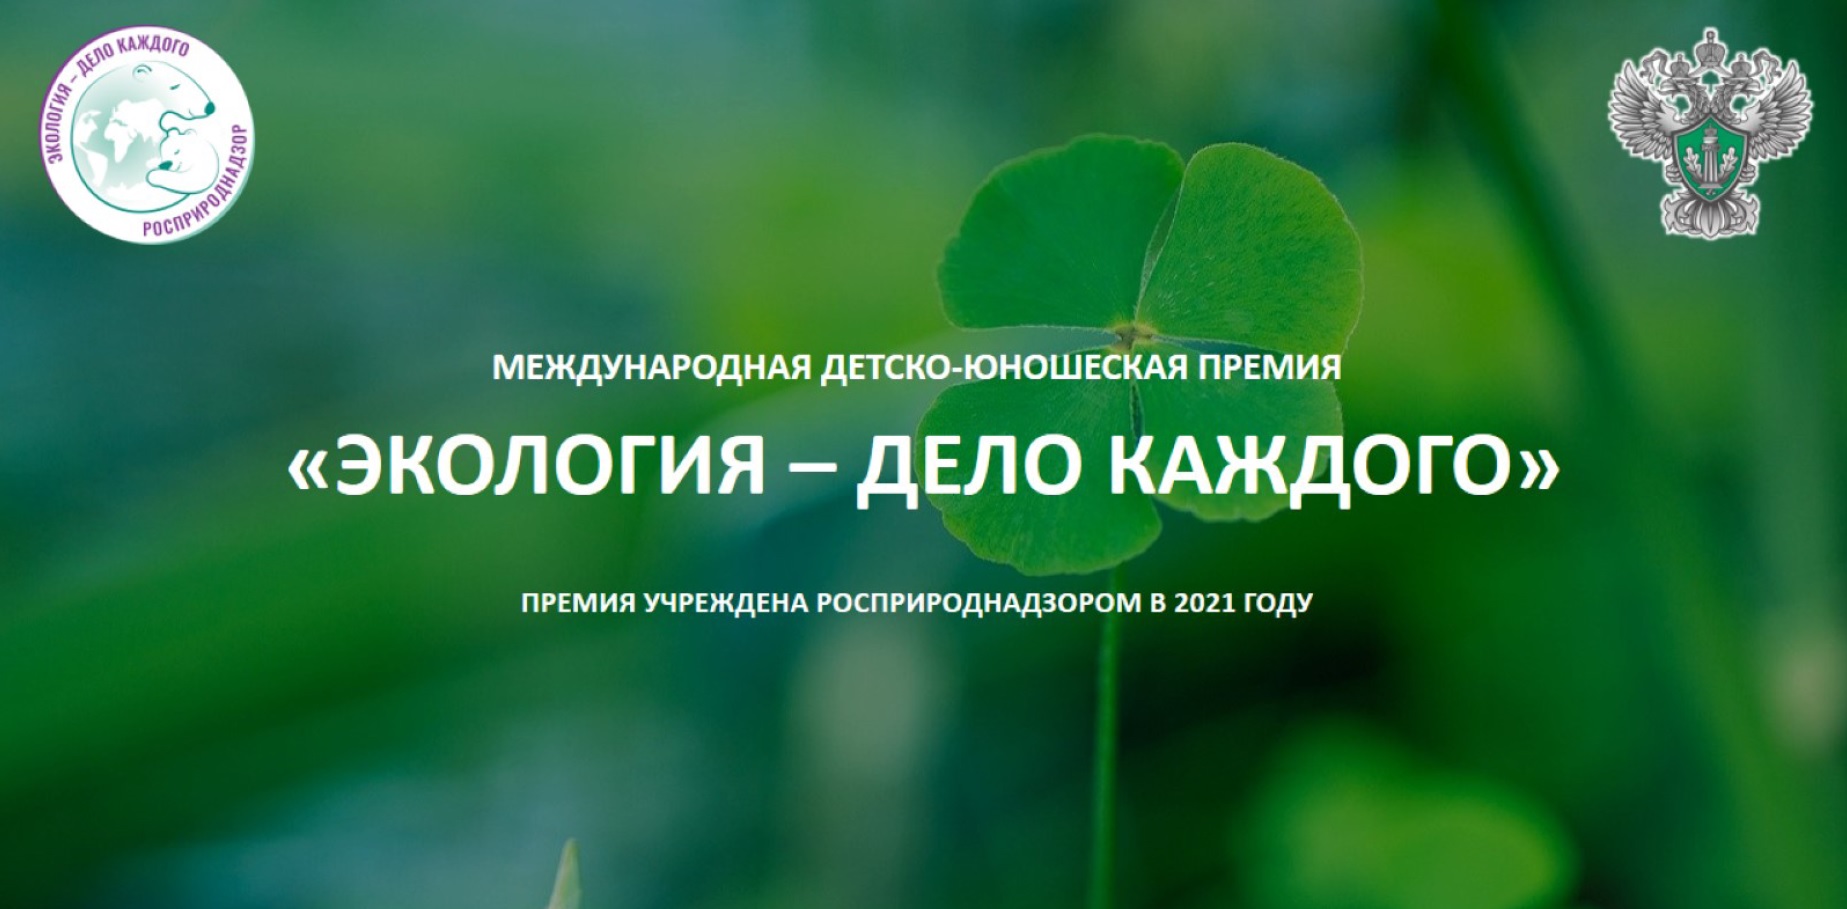 О проведении Международной детско-юношеской премии «Экология – дело каждого».